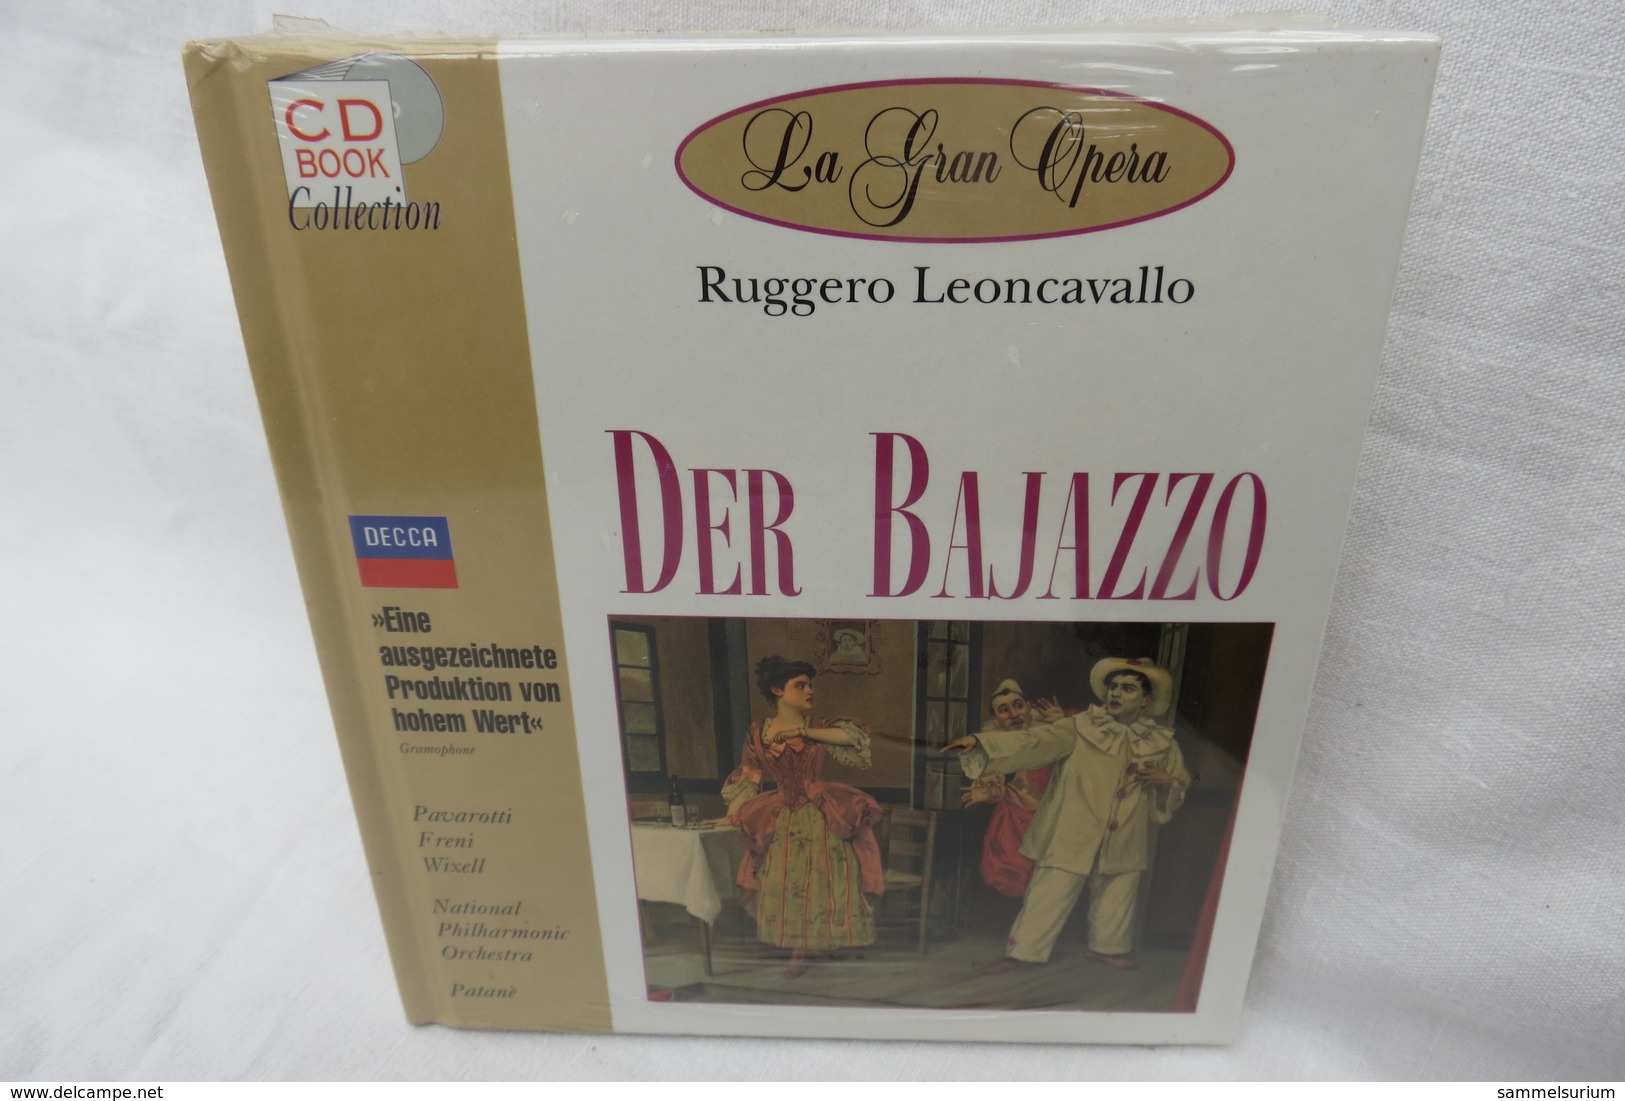 CD "Der Bajazzo / Ruggero Leoncavallo" Mit Buch Aus Der CD Book Collection (ungeöffnet, Original Eingeschweißt) - Oper & Operette